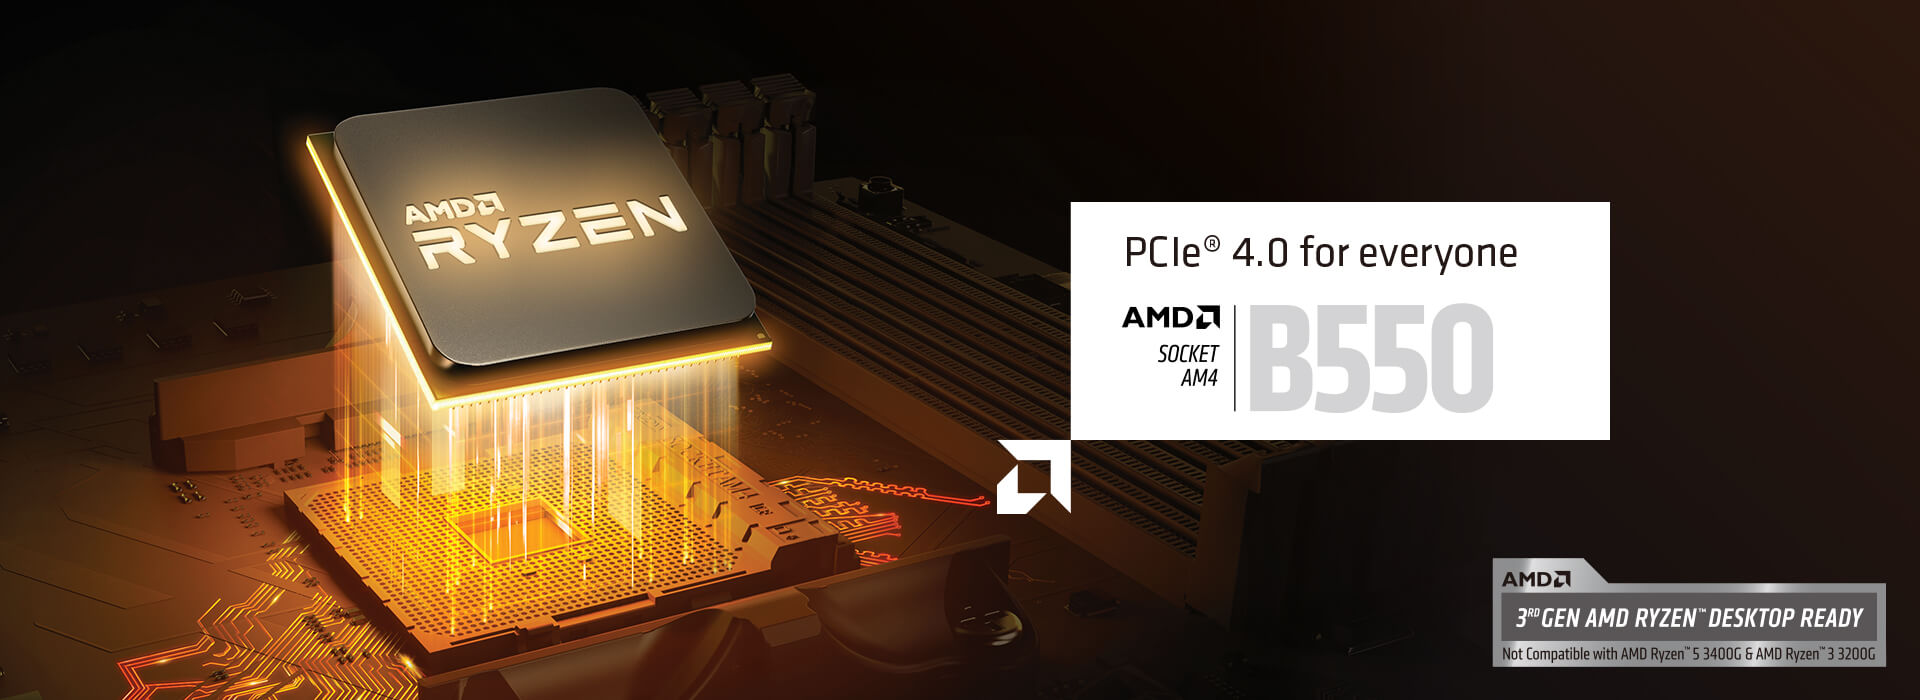 PCIe 4.0 for everyone. AMD SOCKET AM$ B550. 3rd GEN AMD RYZEN DESKTOP READY. Not Compatible with AMD Ryzen 5 3400G & AMD Ryzen 3 3200G.